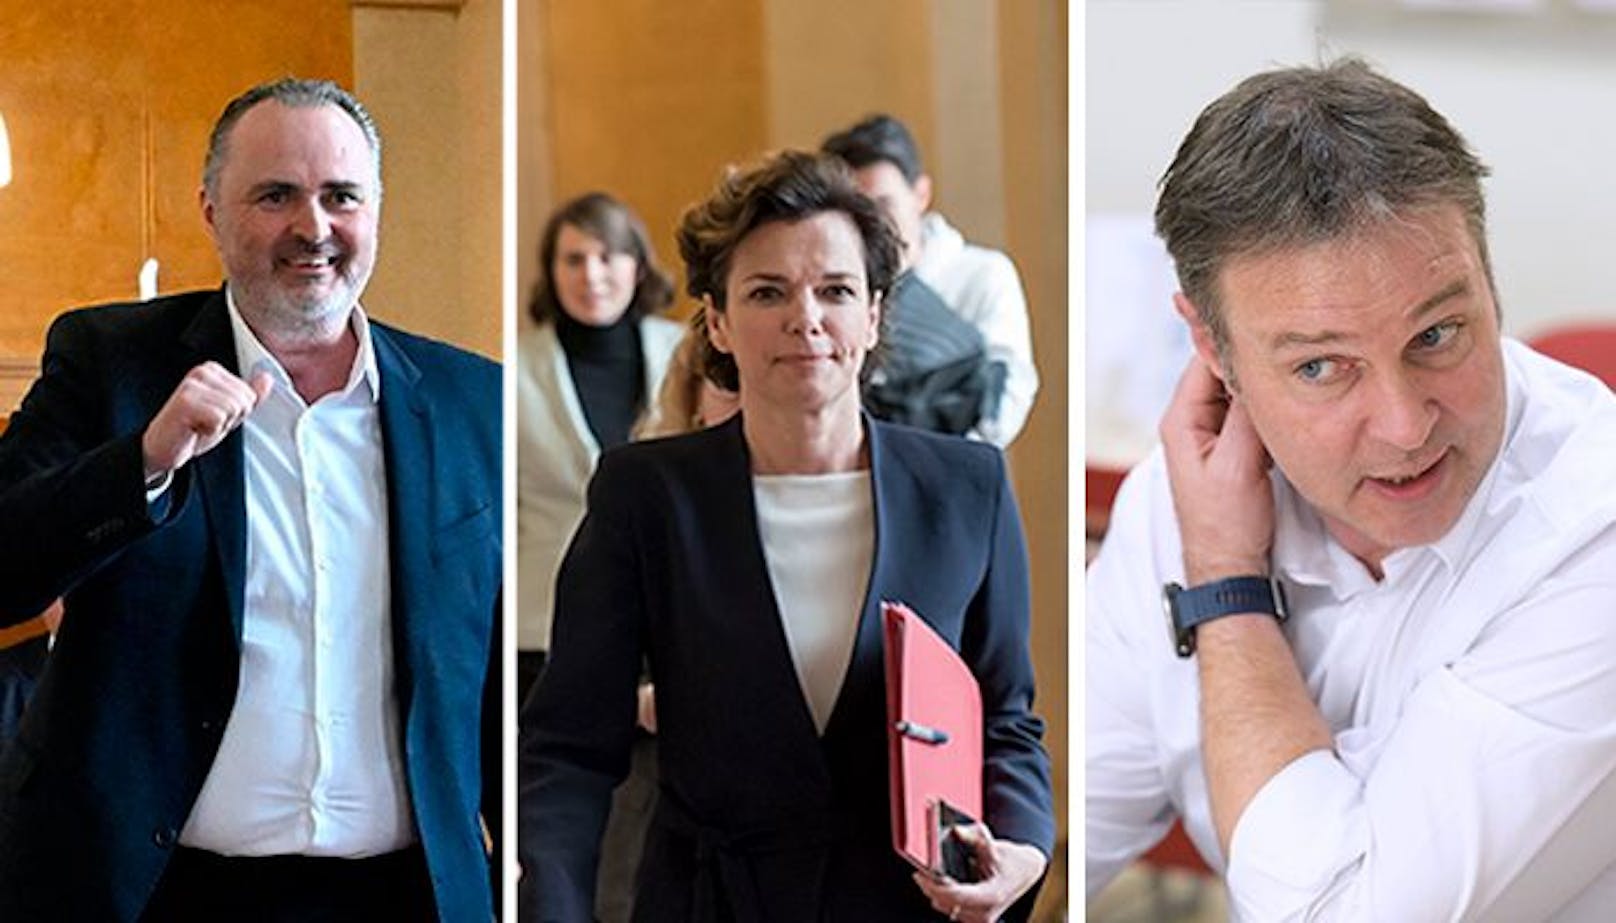 Im Rahmen einer Mitgliederbefragung gehen Hans Peter Doskozil, Pamela Rendi-Wagner und Andreas Babler ins Rennen um den SPÖ-Vorsitz. Ein Sonderparteitag am 3. Juni soll schließlich Klarheit in die Führungsfrage bringen.